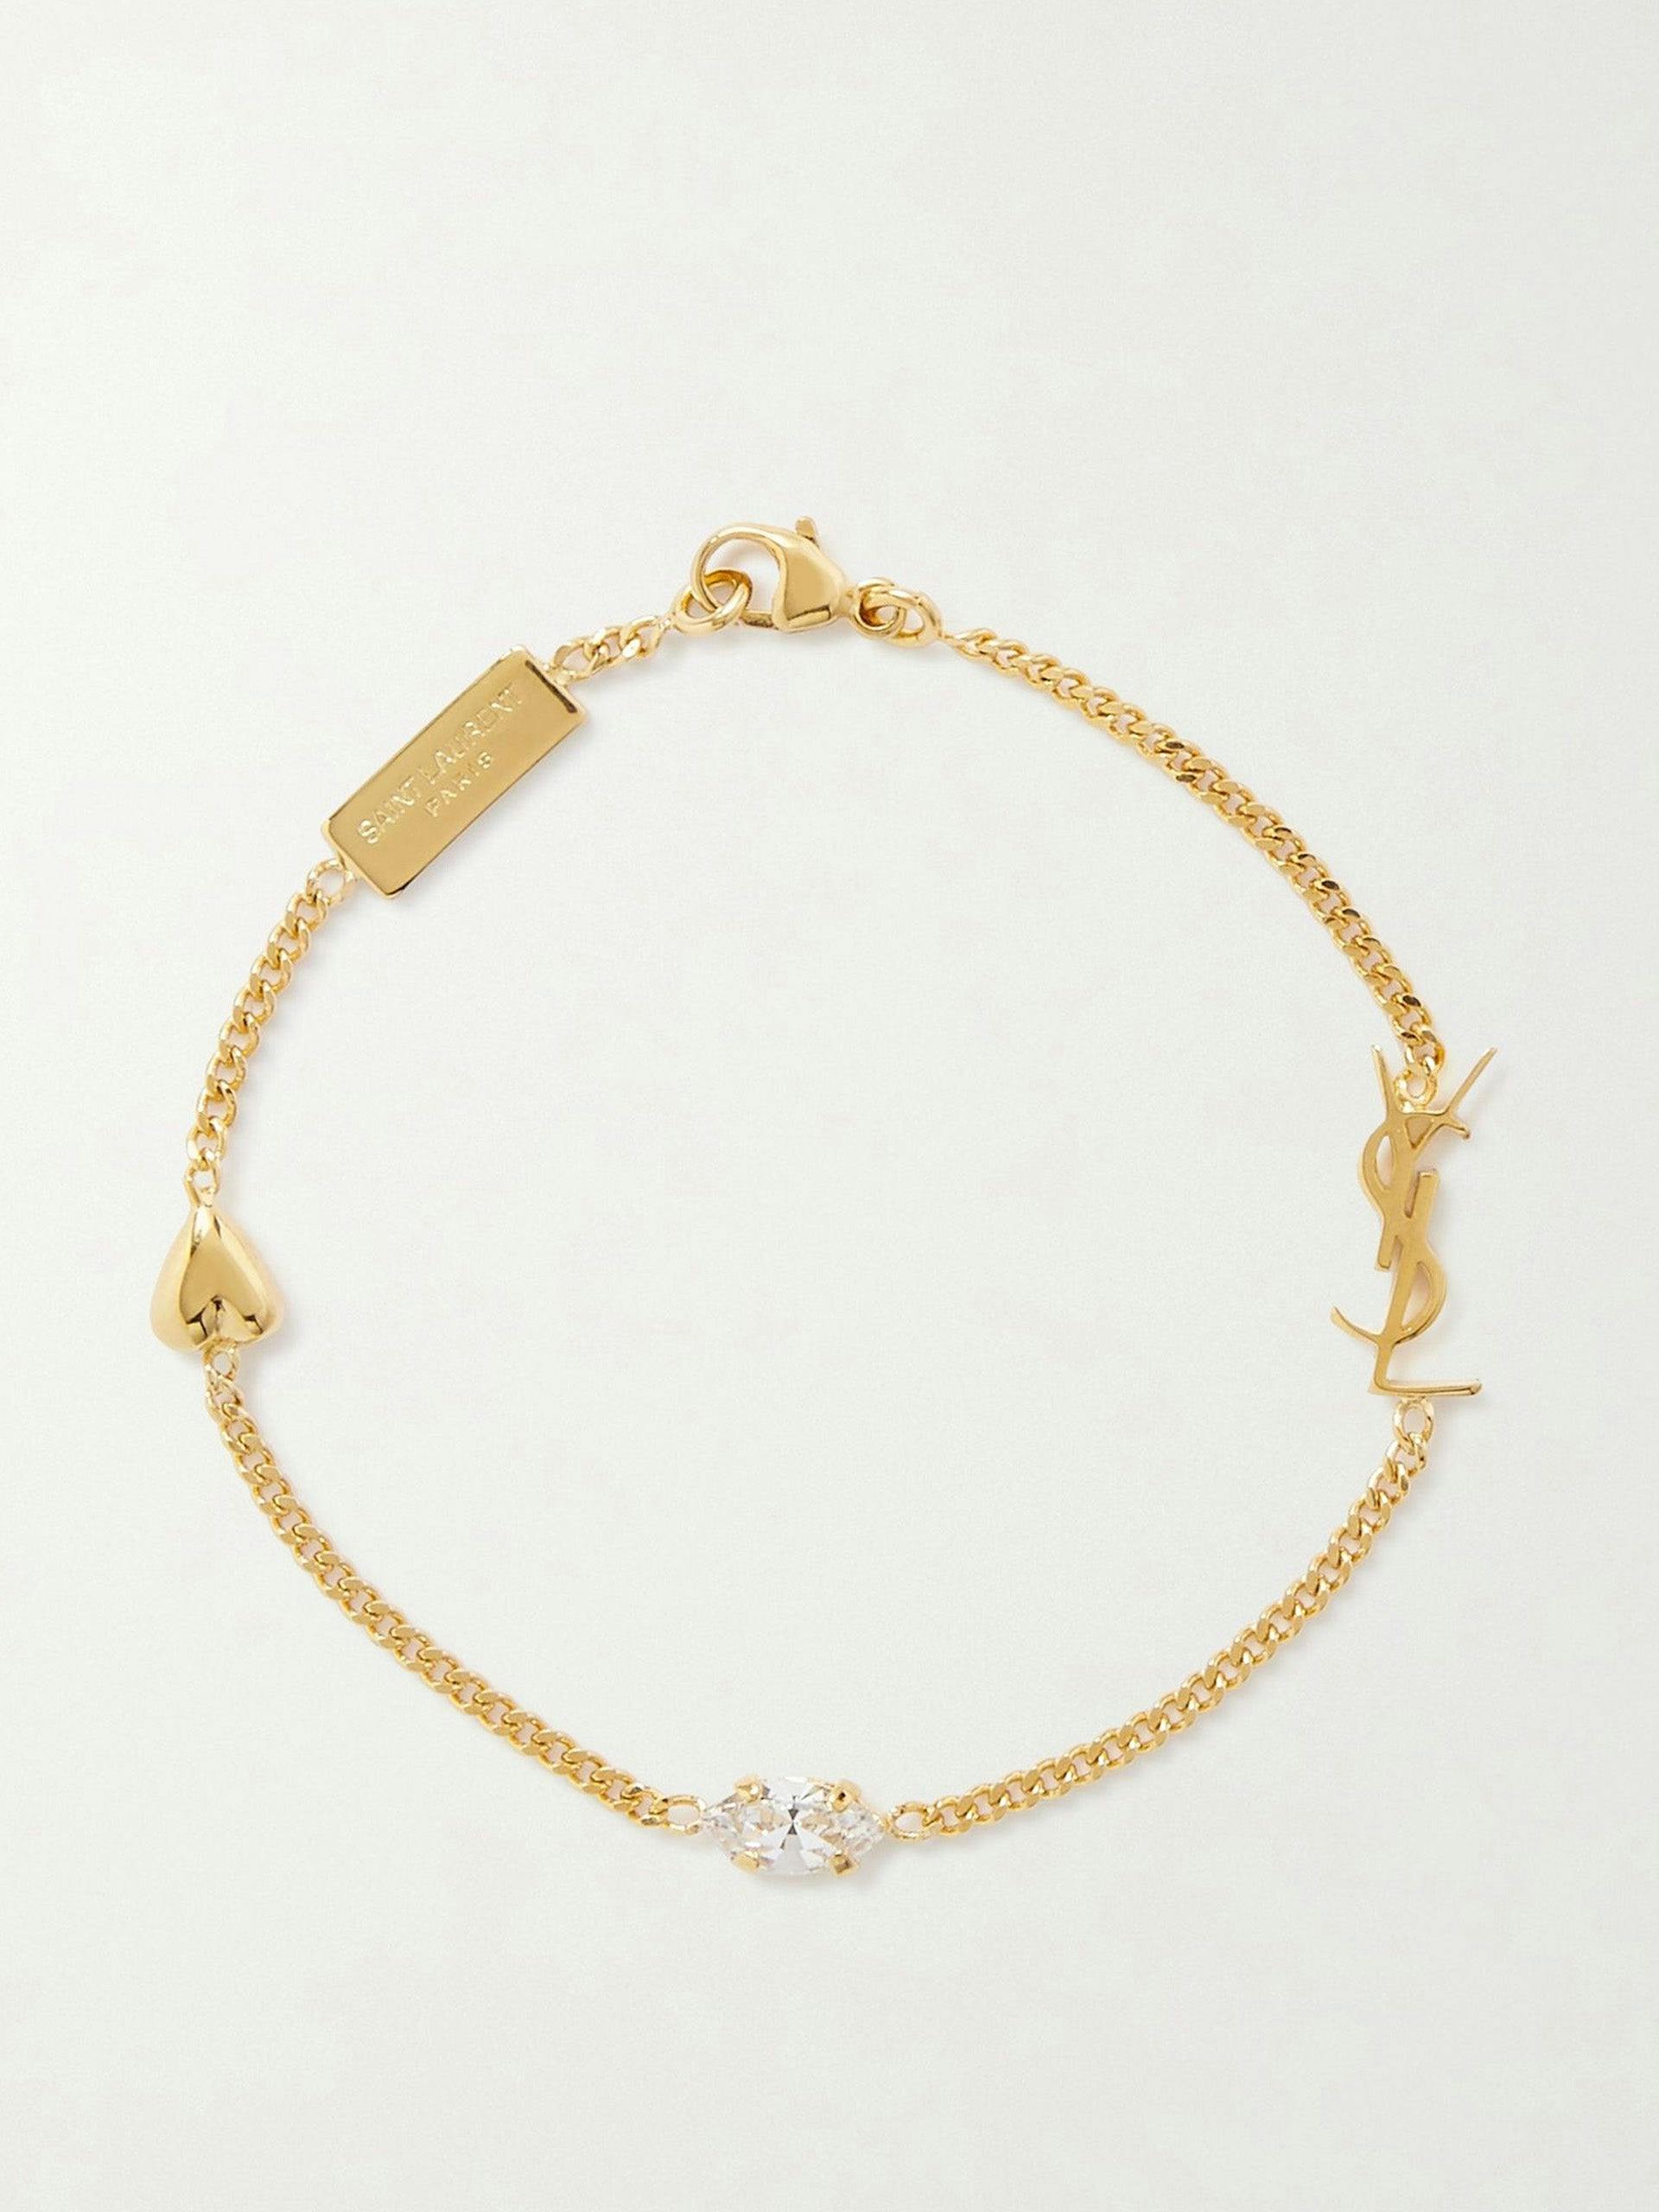 Crystal-embellished gold-tone bracelet